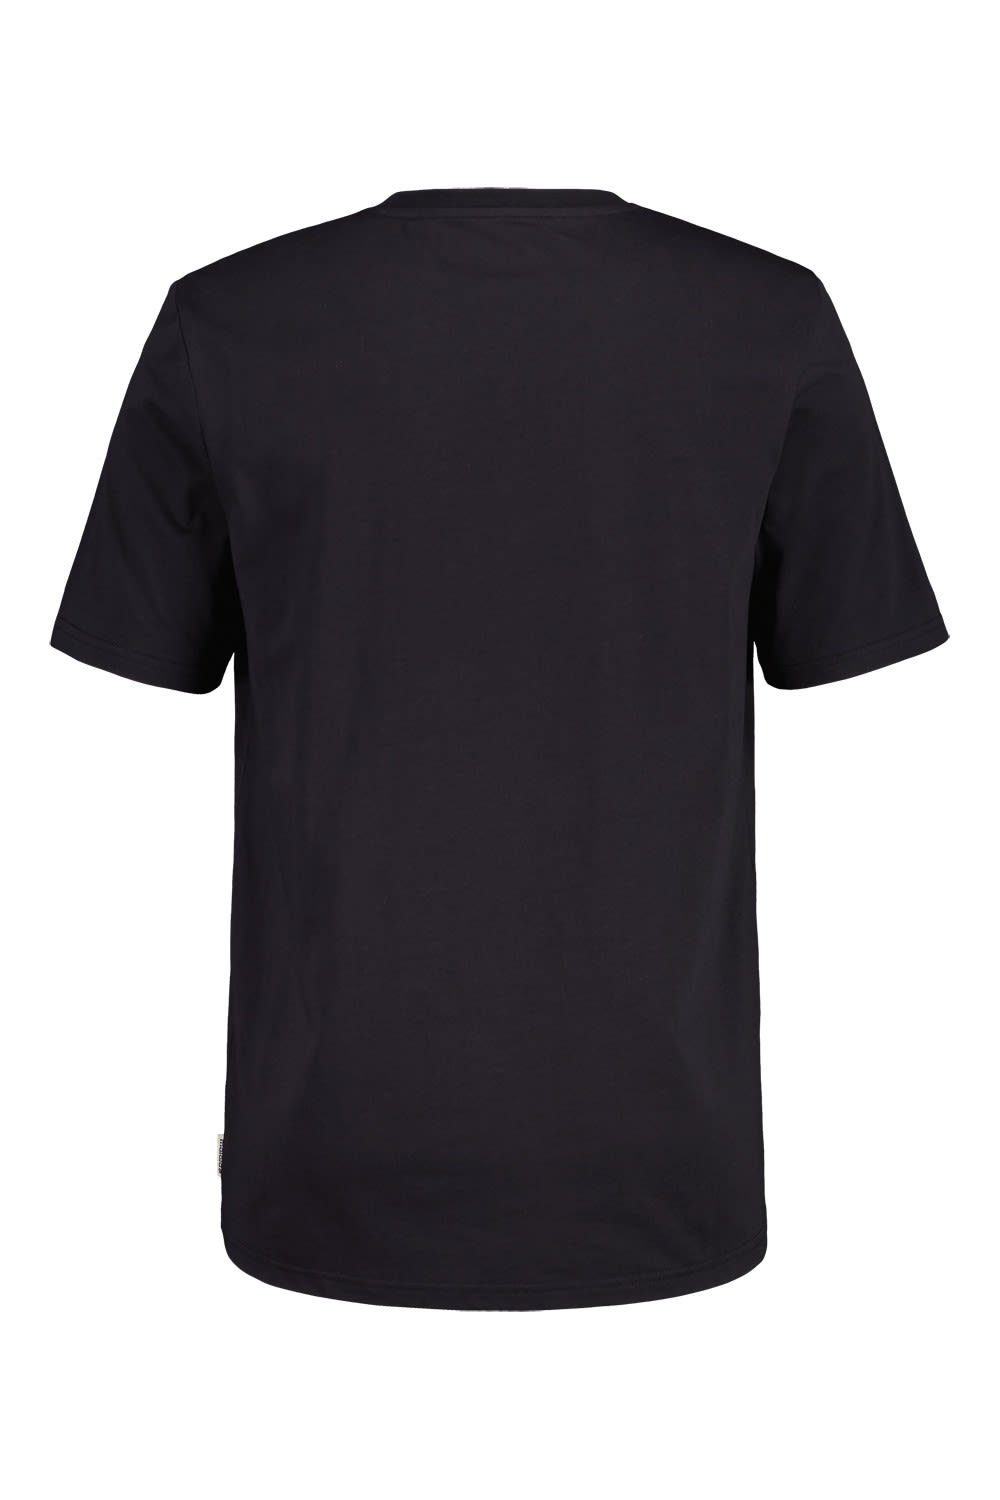 Moonless T-Shirt Herren T-shirt Kurzarm-Shirt Maloja Duranm. M Maloja